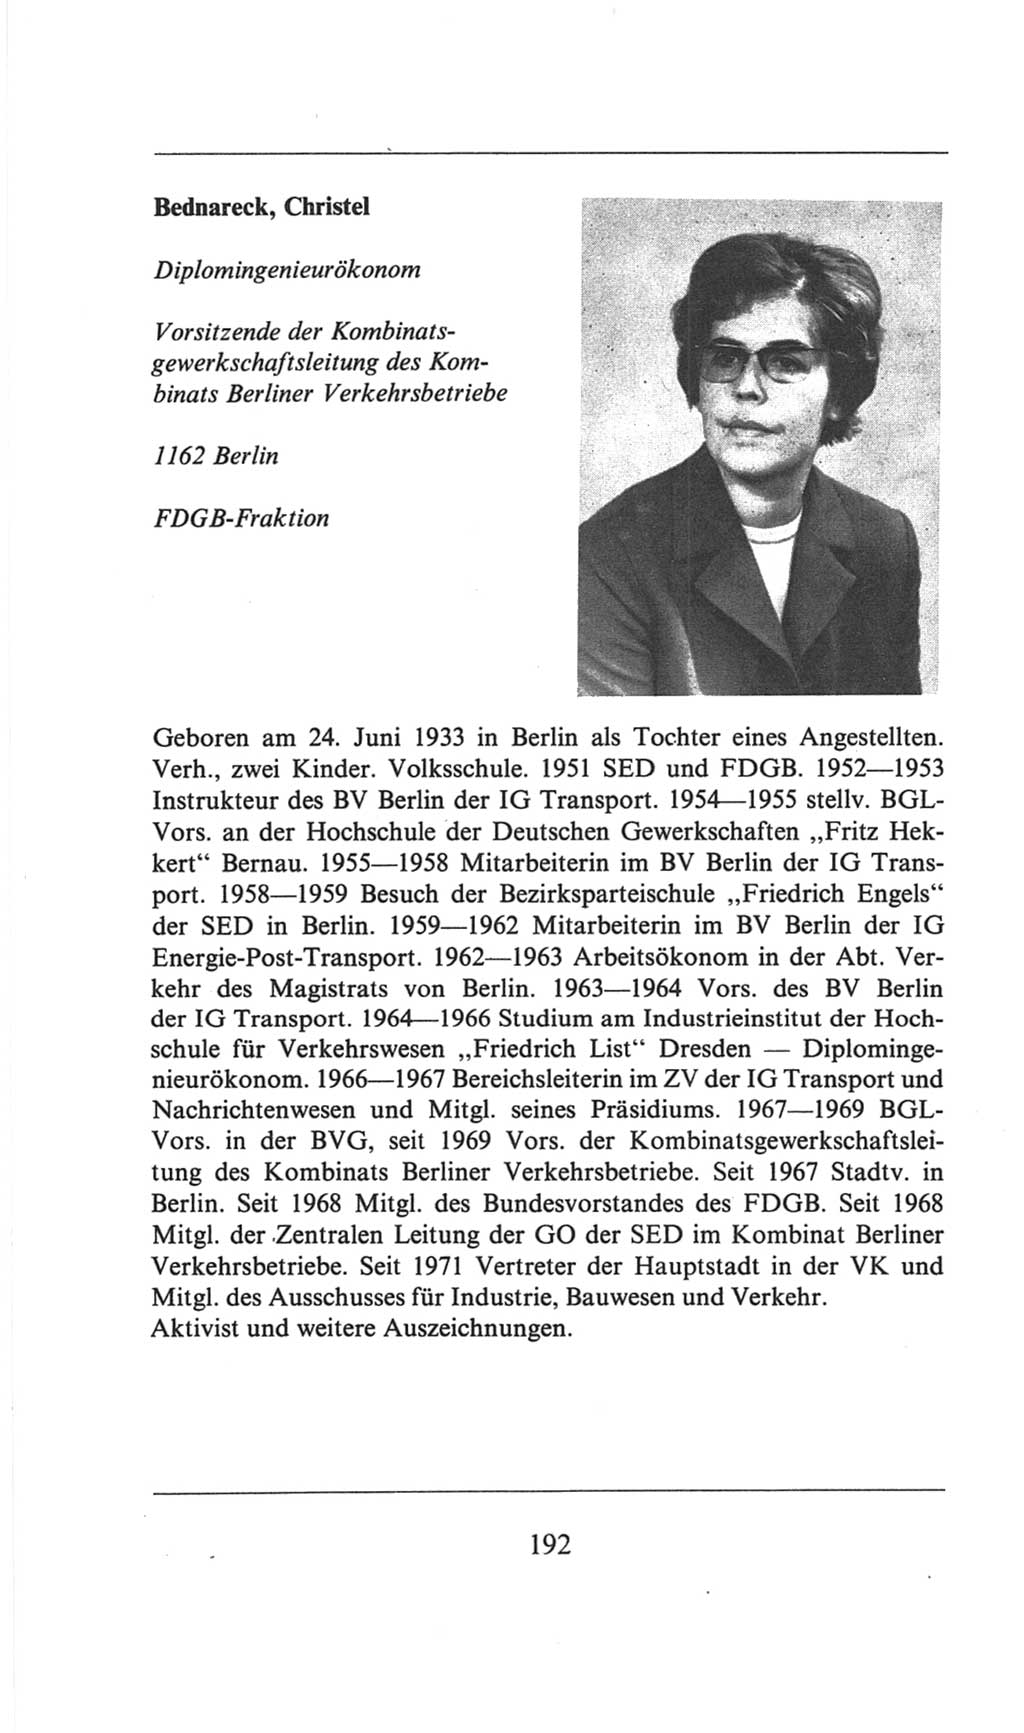 Volkskammer (VK) der Deutschen Demokratischen Republik (DDR), 6. Wahlperiode 1971-1976, Seite 192 (VK. DDR 6. WP. 1971-1976, S. 192)